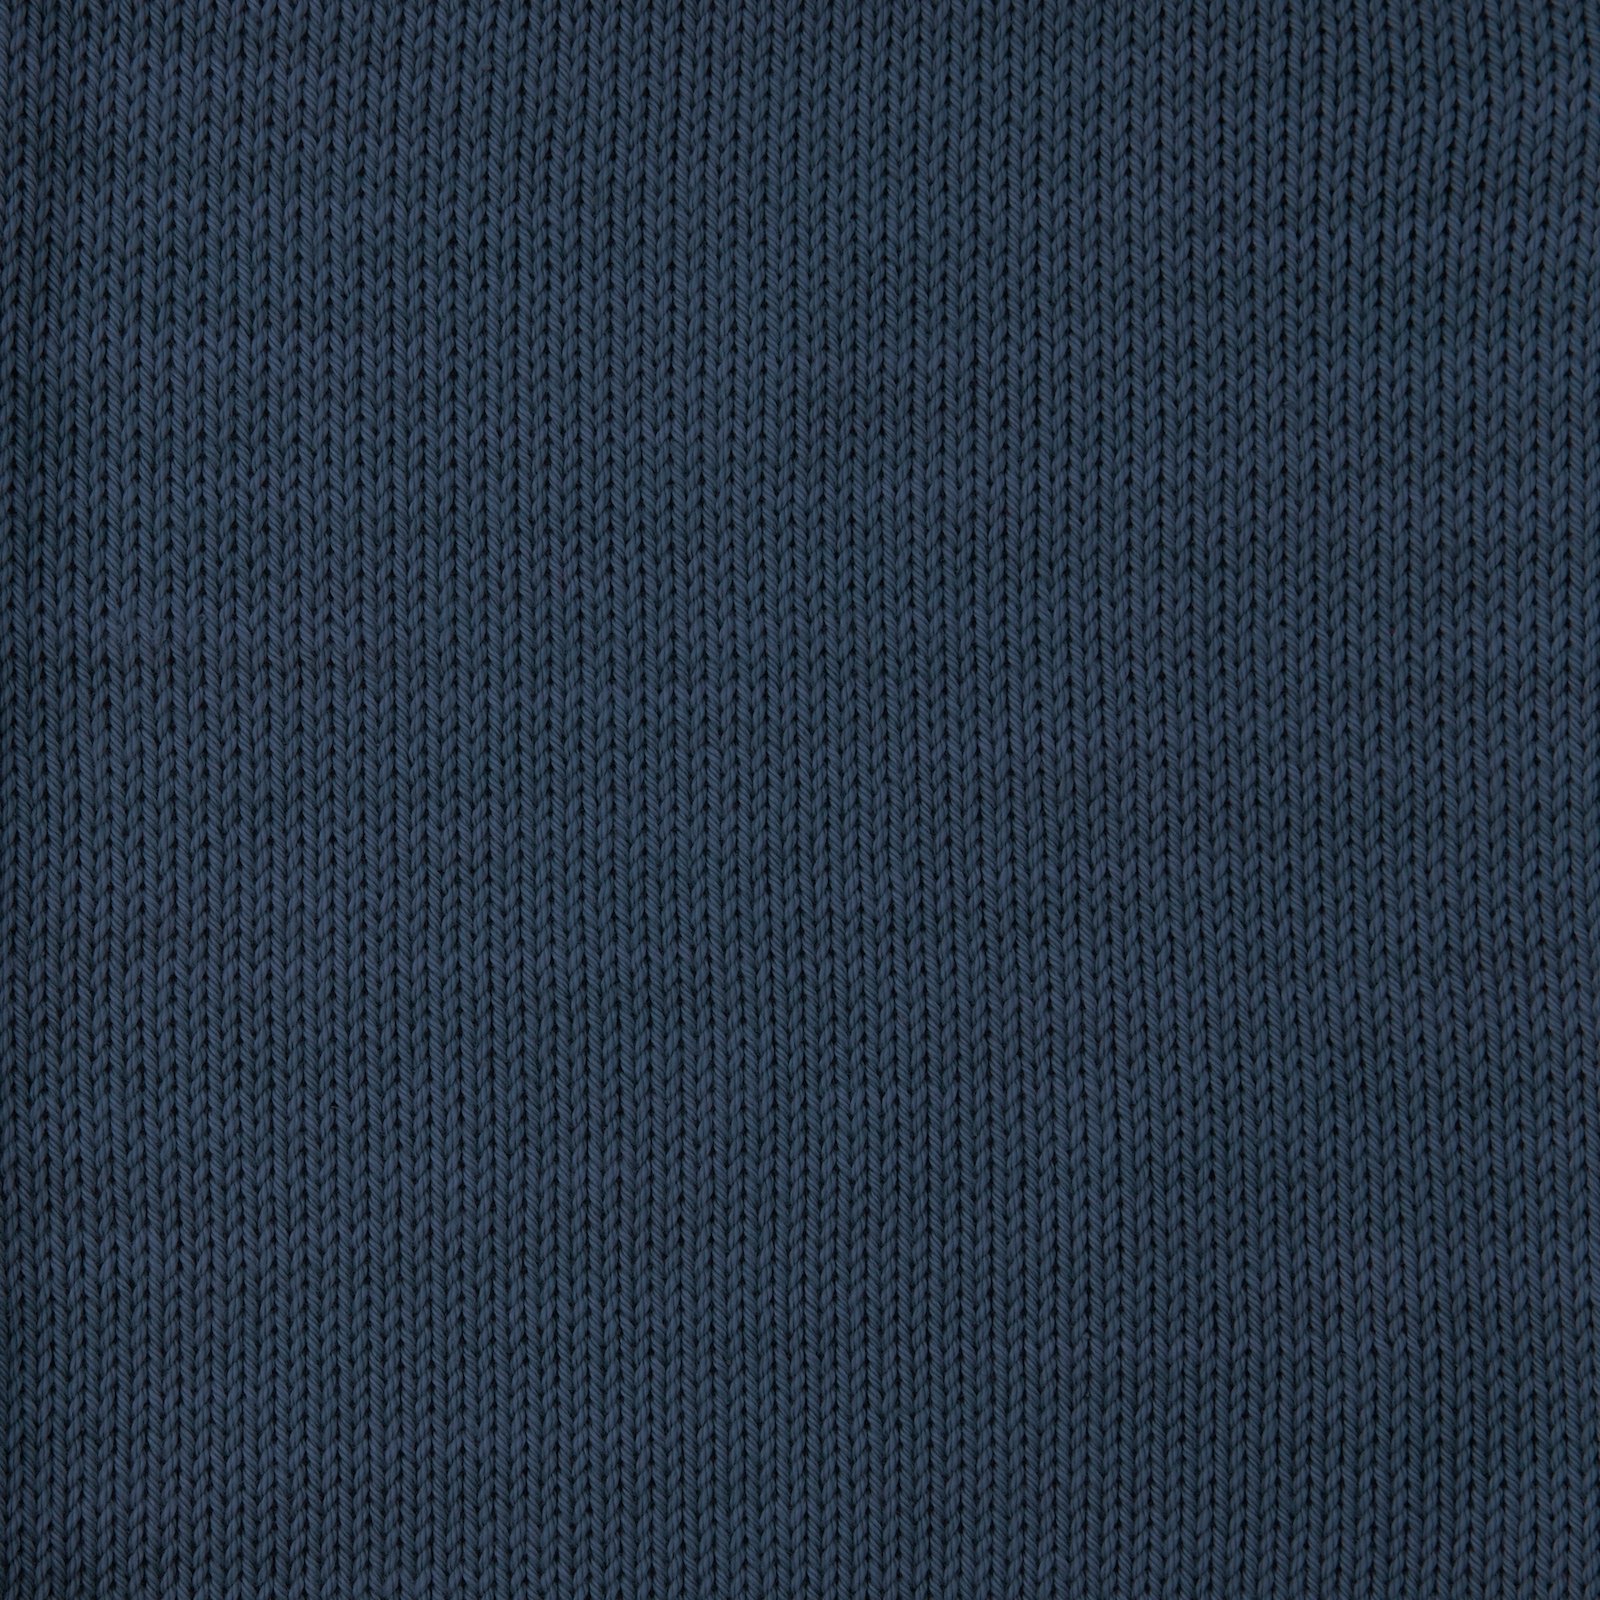 FRAYA, 100% cotton yarn "Colourful", navy 90060023_sskit